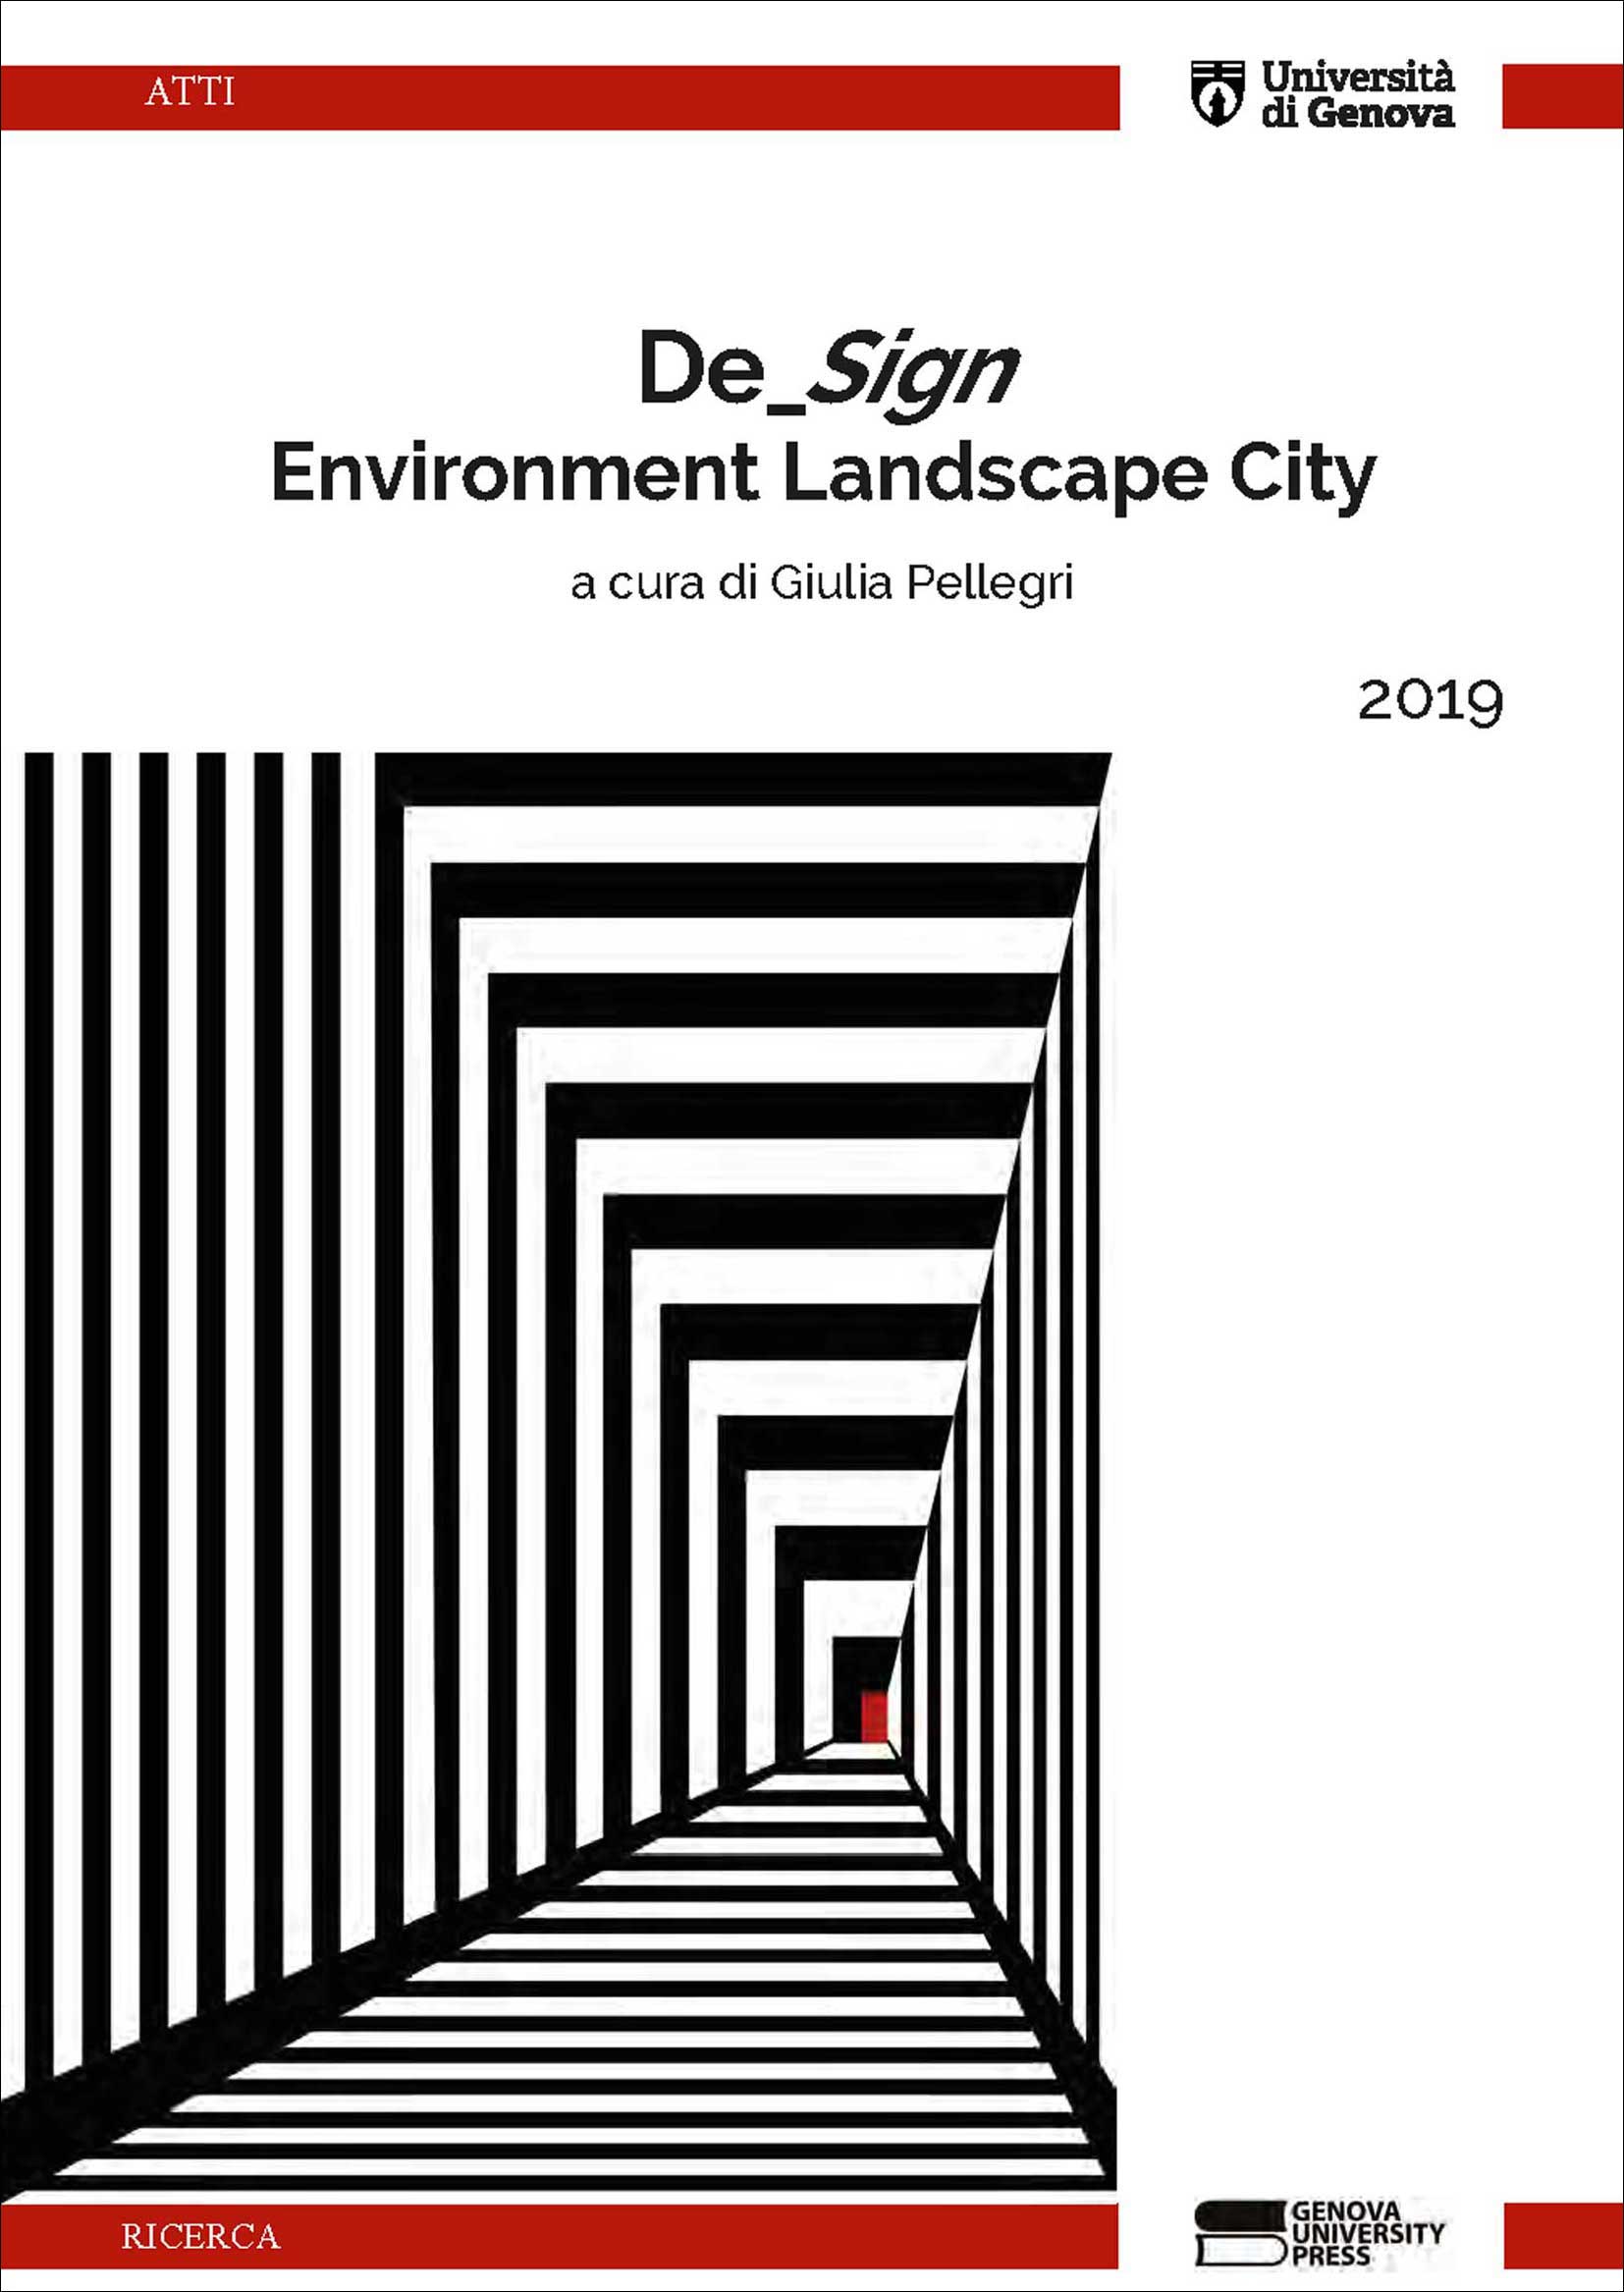 De_Sign. Environment Landscape City 2019